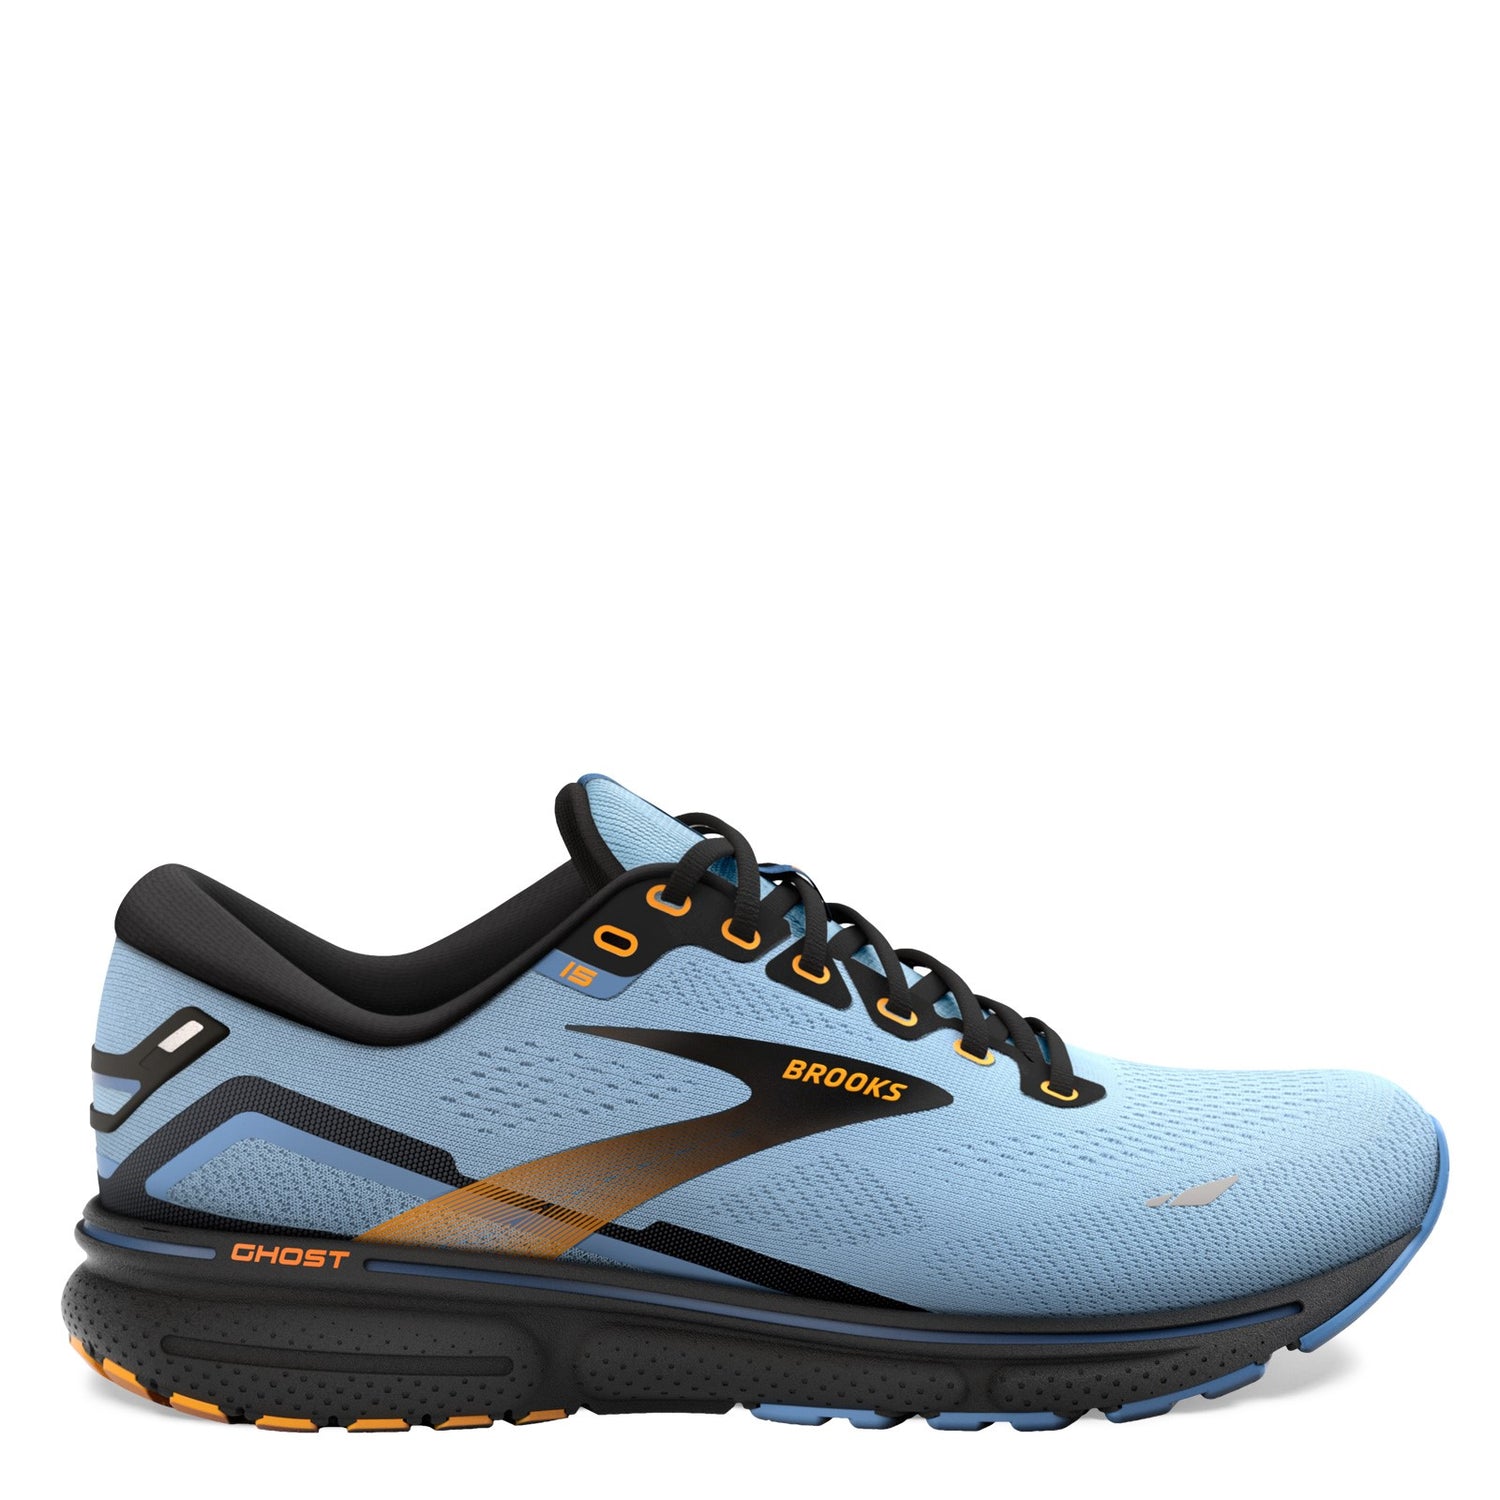 Peltz Shoes  Women's Brooks Ghost 15 Running Shoe Light Blue/Black/Yellow 120380 1B 437